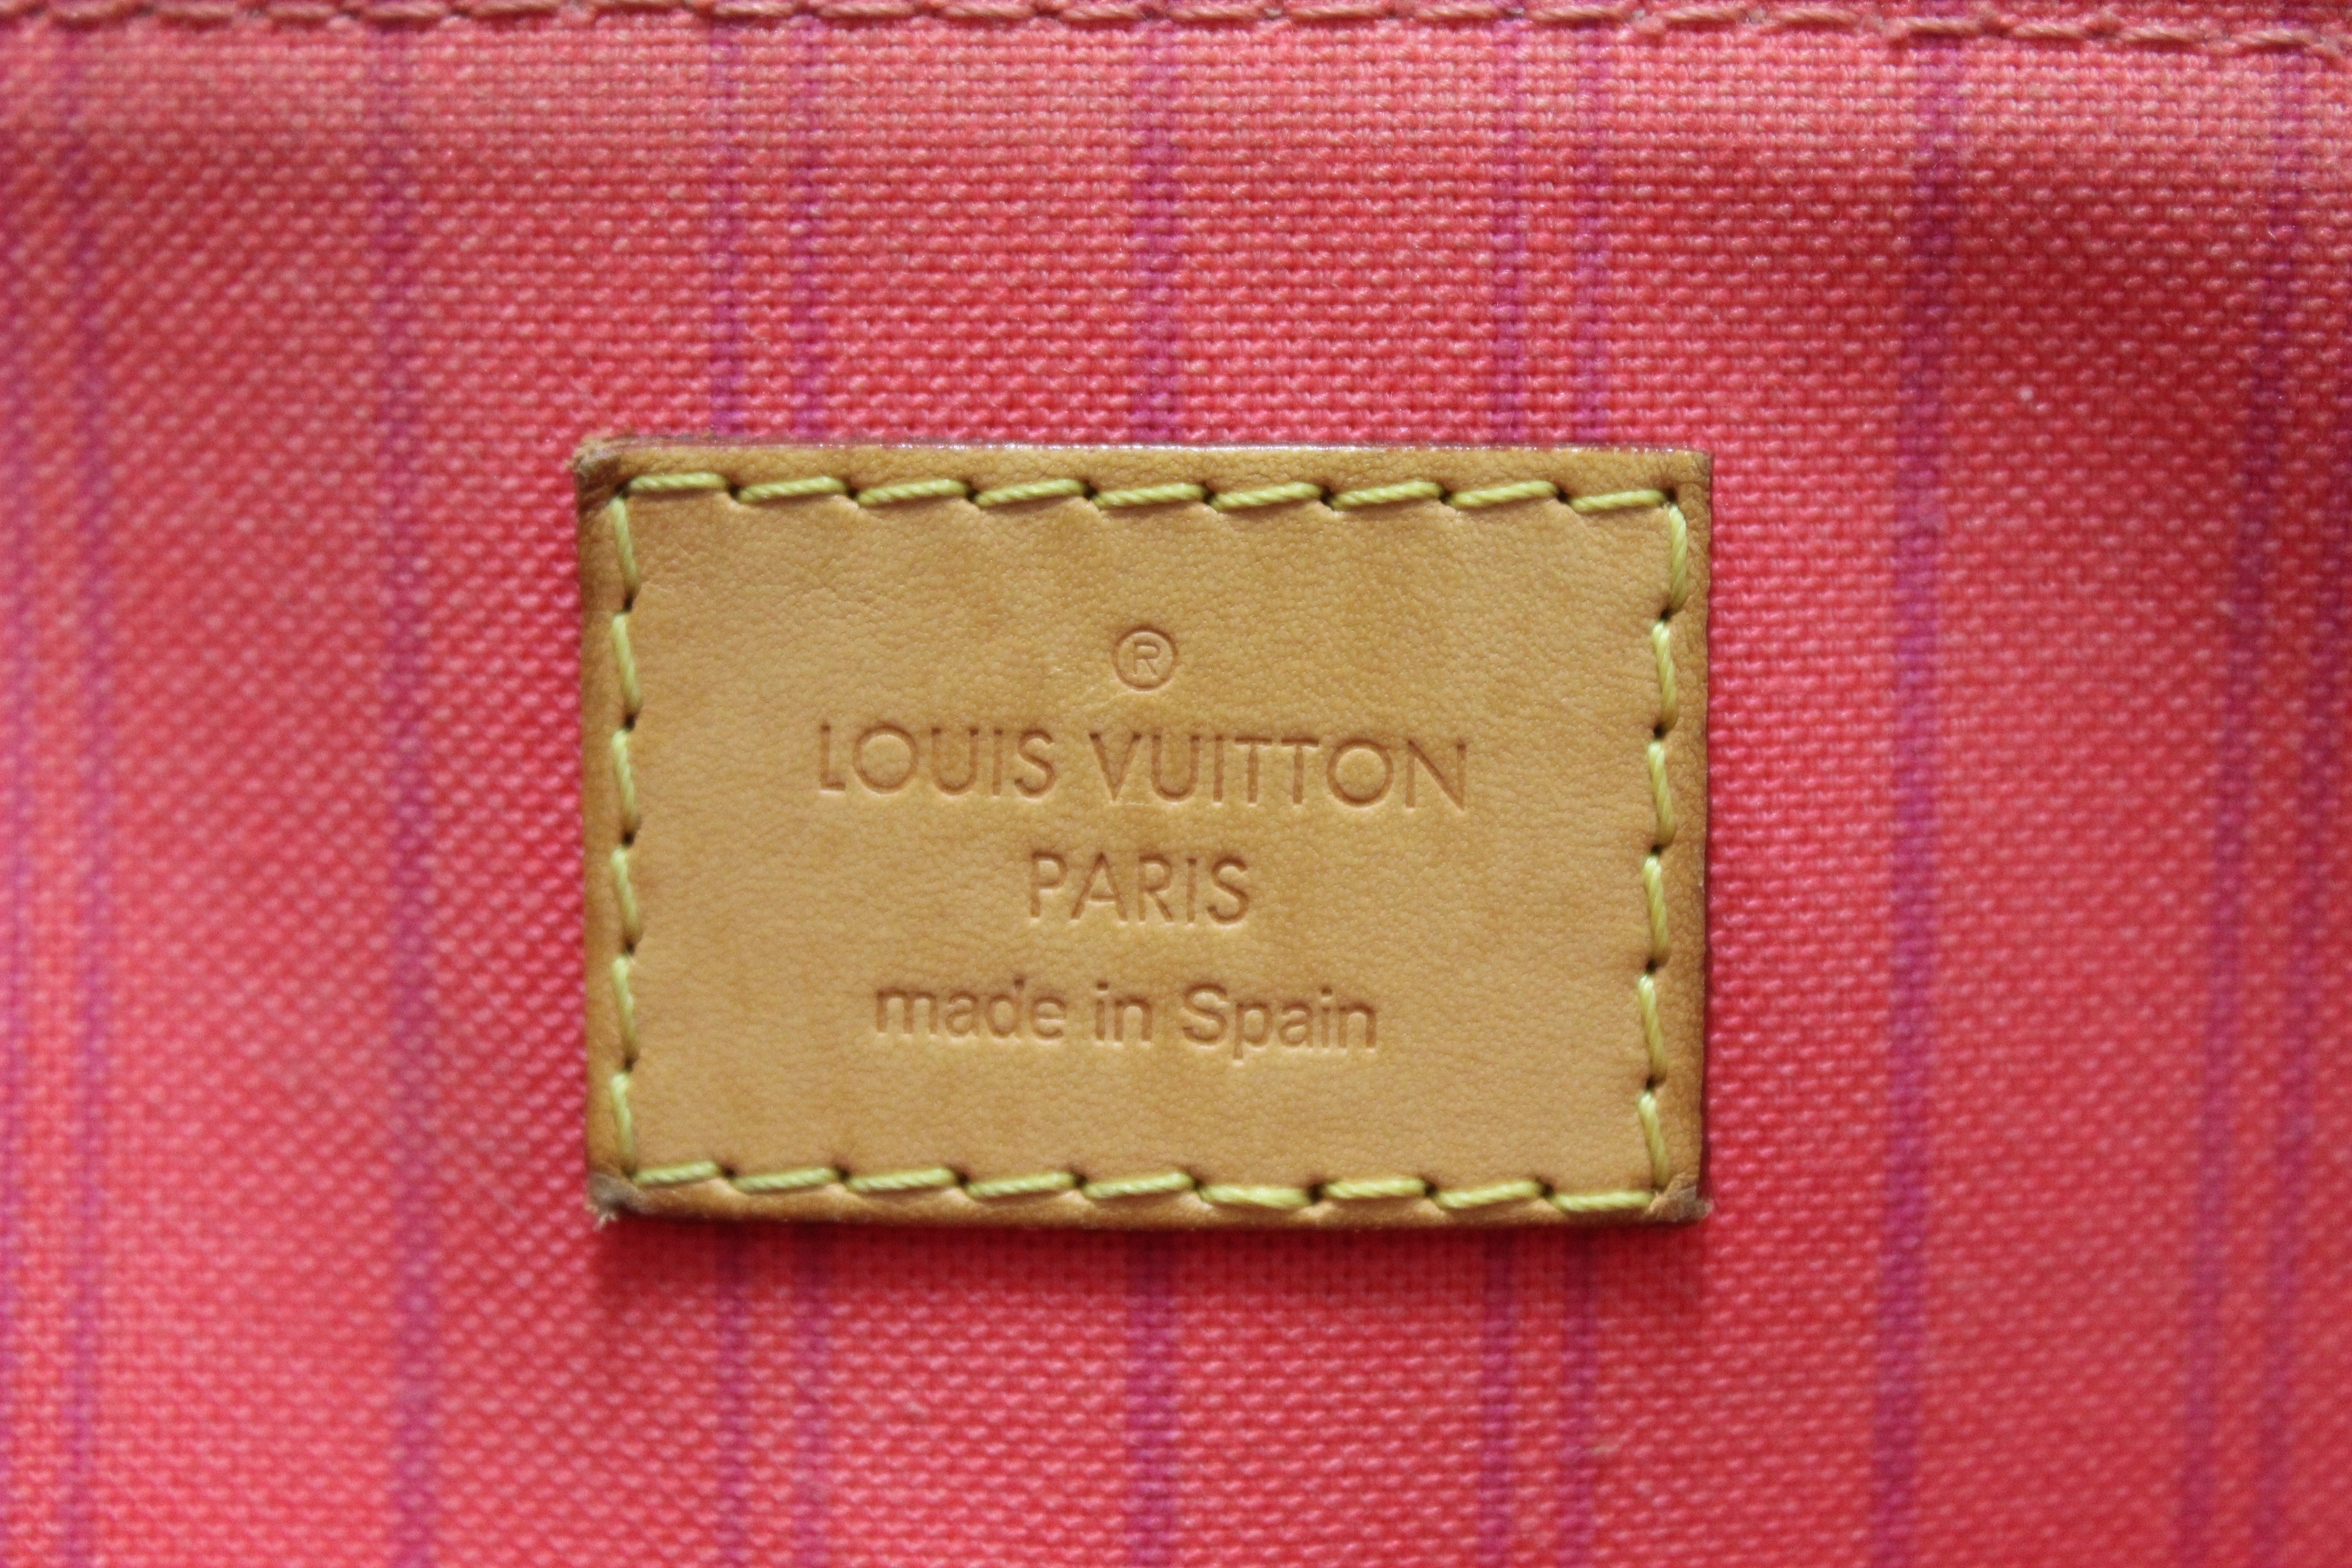 Authentic Louis Vuitton Calvi Red Canvas Messenger Bag